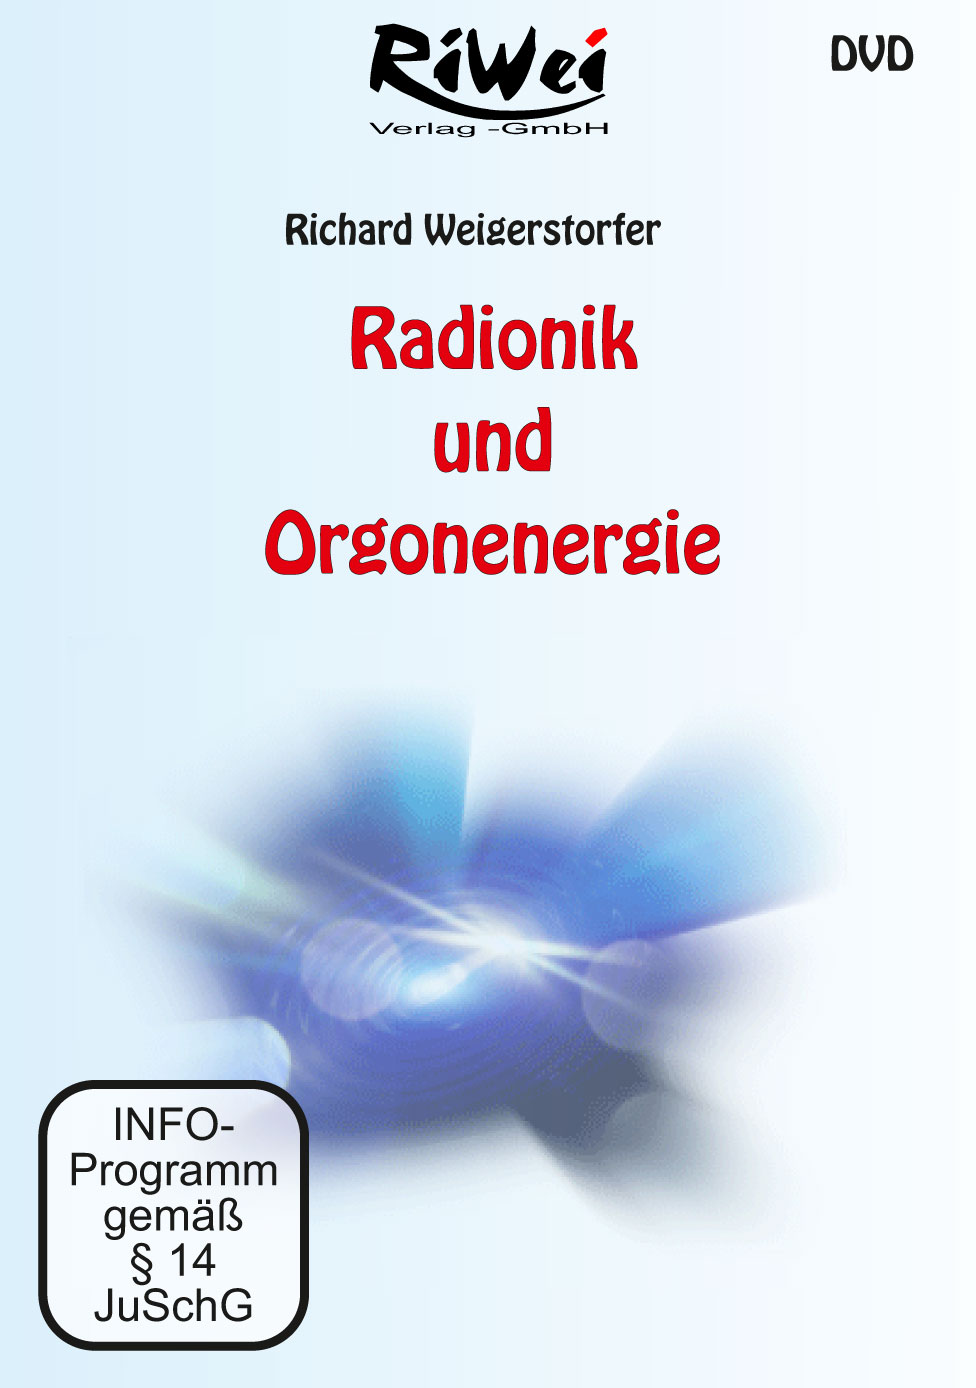 Richard Weigerstorfer - Radionik und Orgonenergie - Film Download